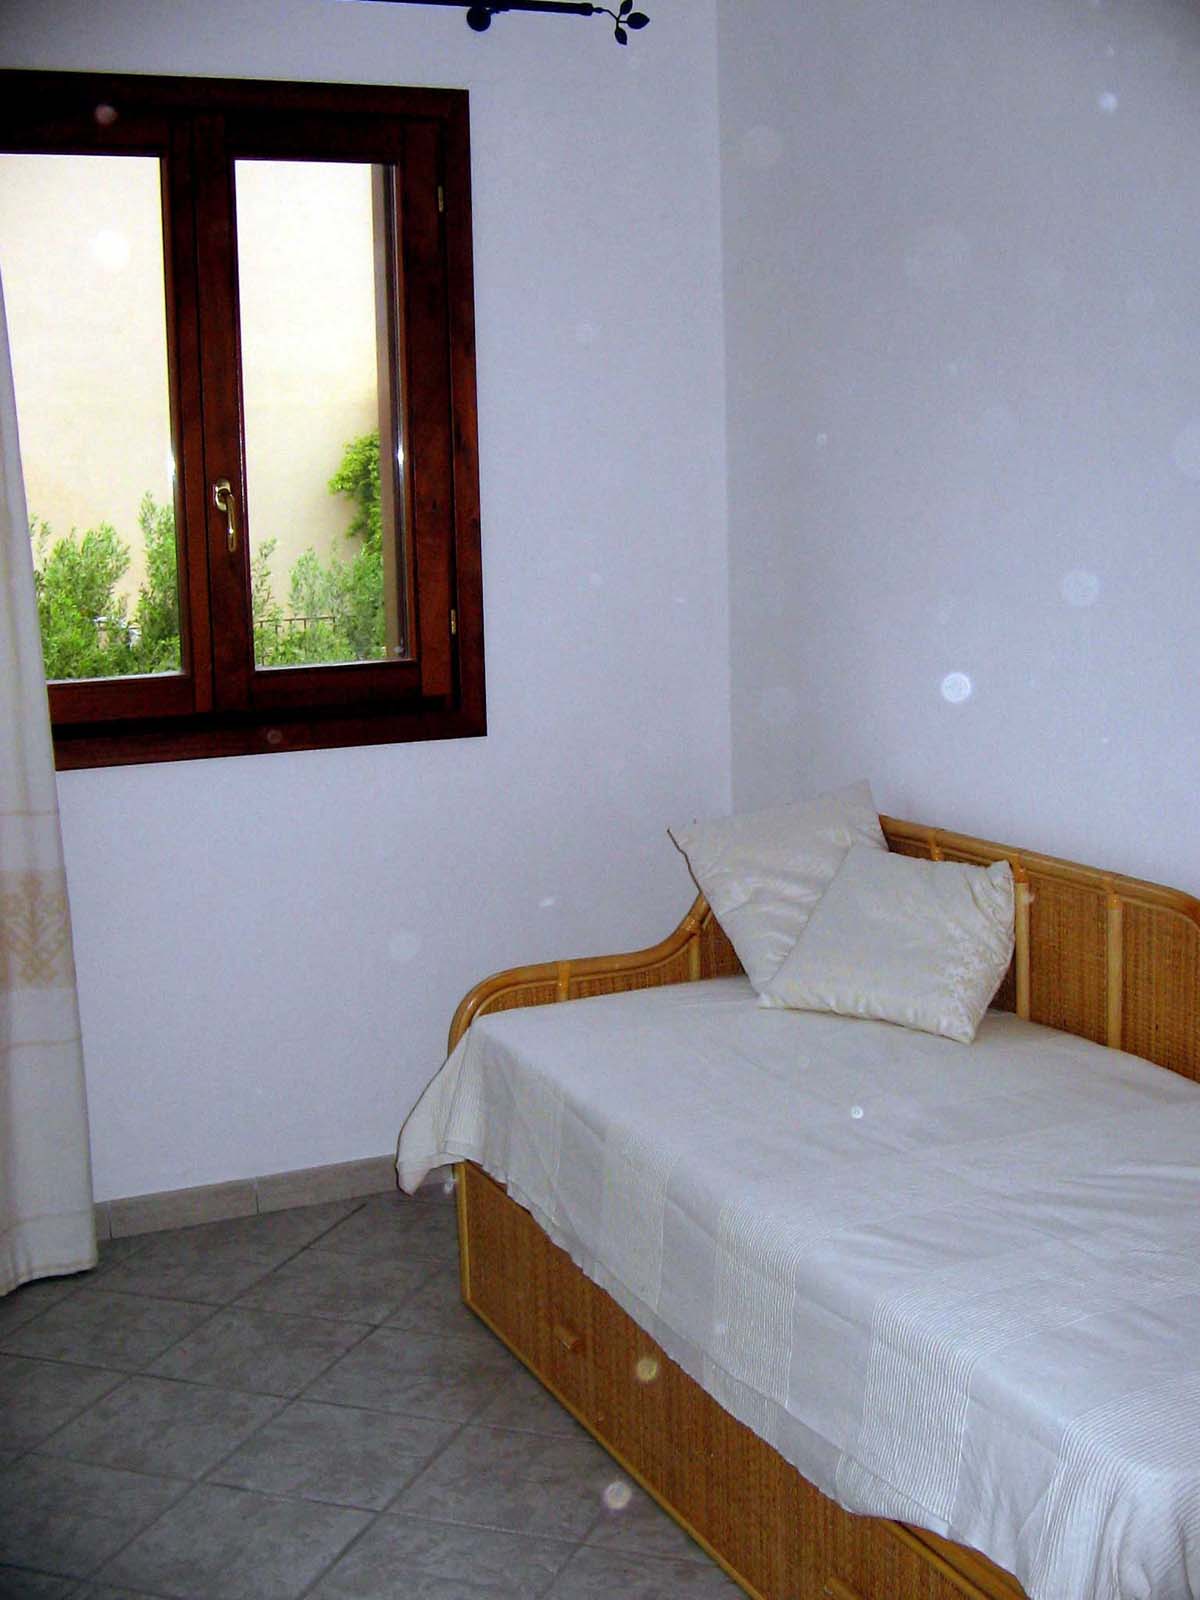 2° letto - Appartamento vacanze al mare vicino Olbia San Teodoro casa in Sardegna annunci affitto estate - Fotografie ville in zona